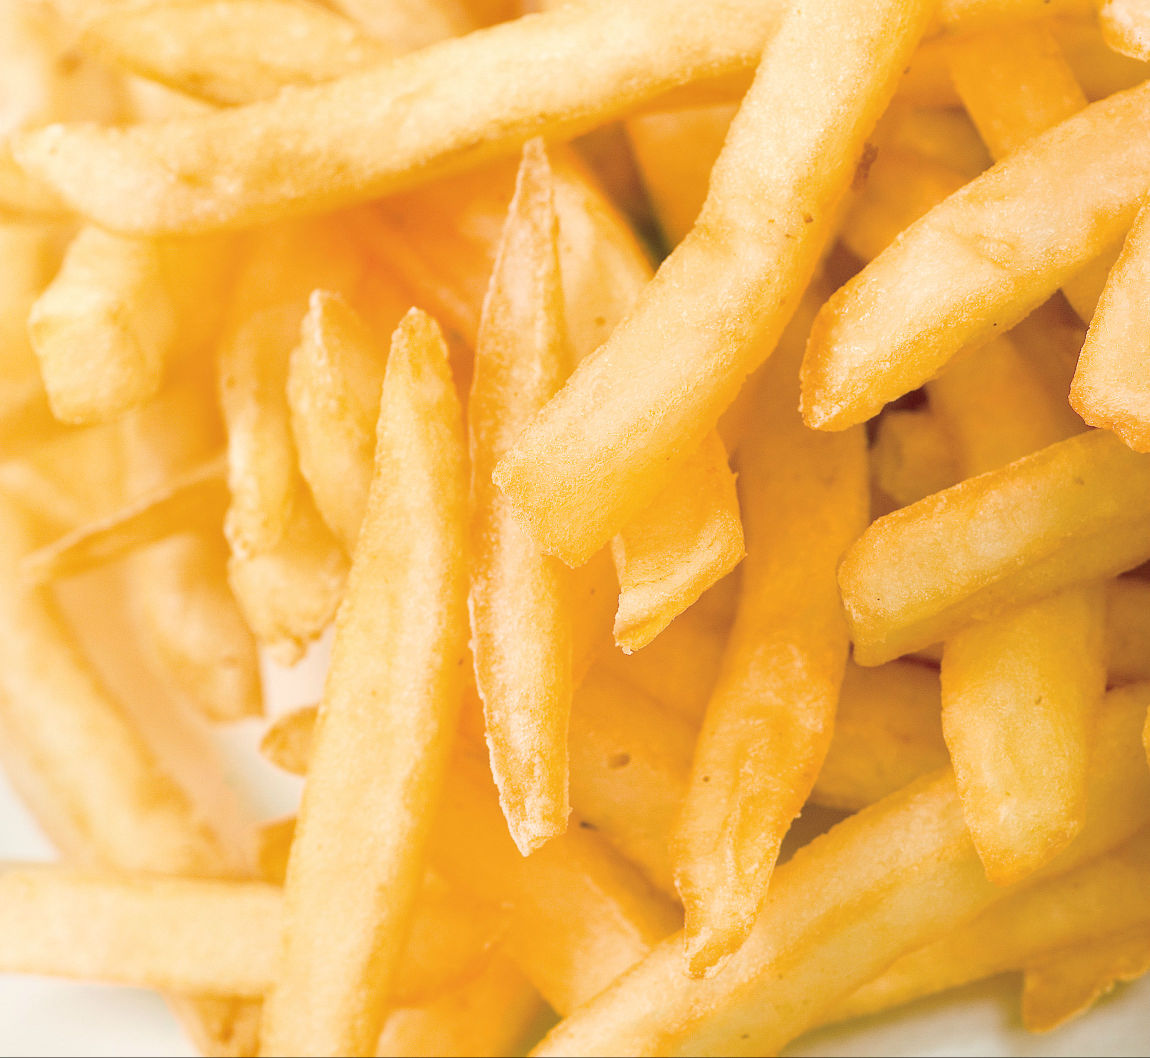 celebrate dom fries